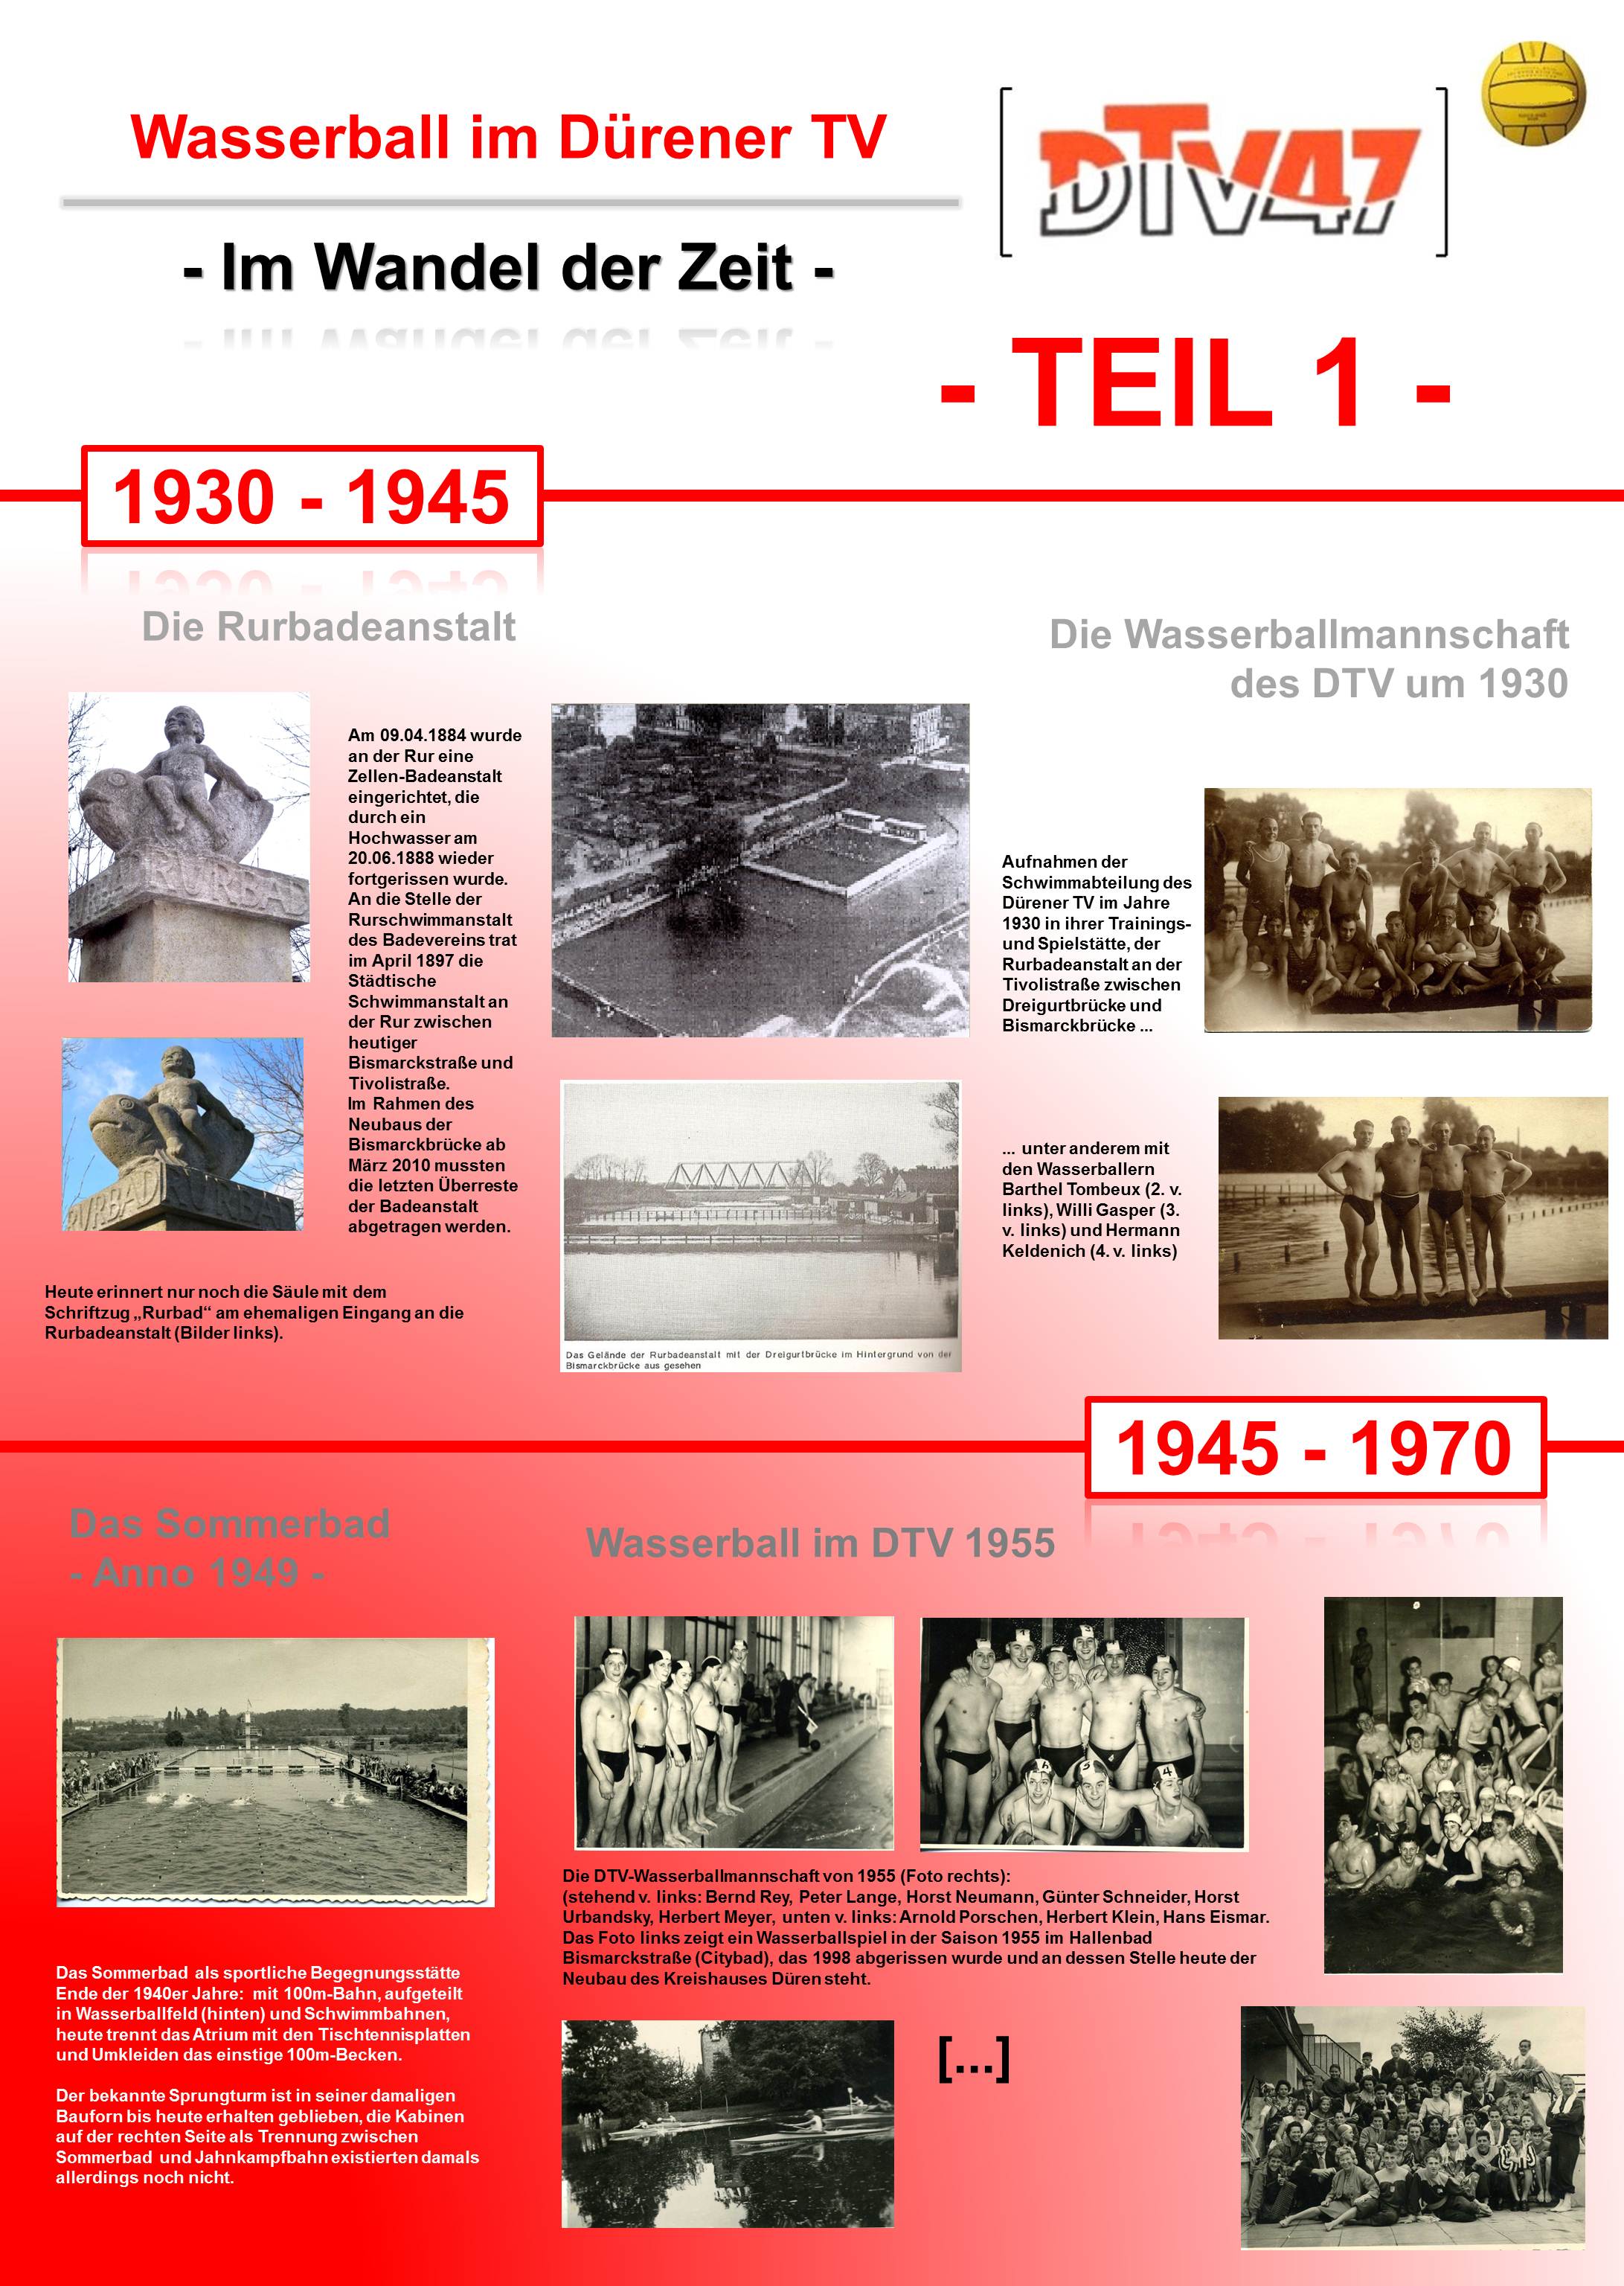 files/dtv47/abteilungen/wasserball/Geschichte/DTV History - Teil 1.jpg